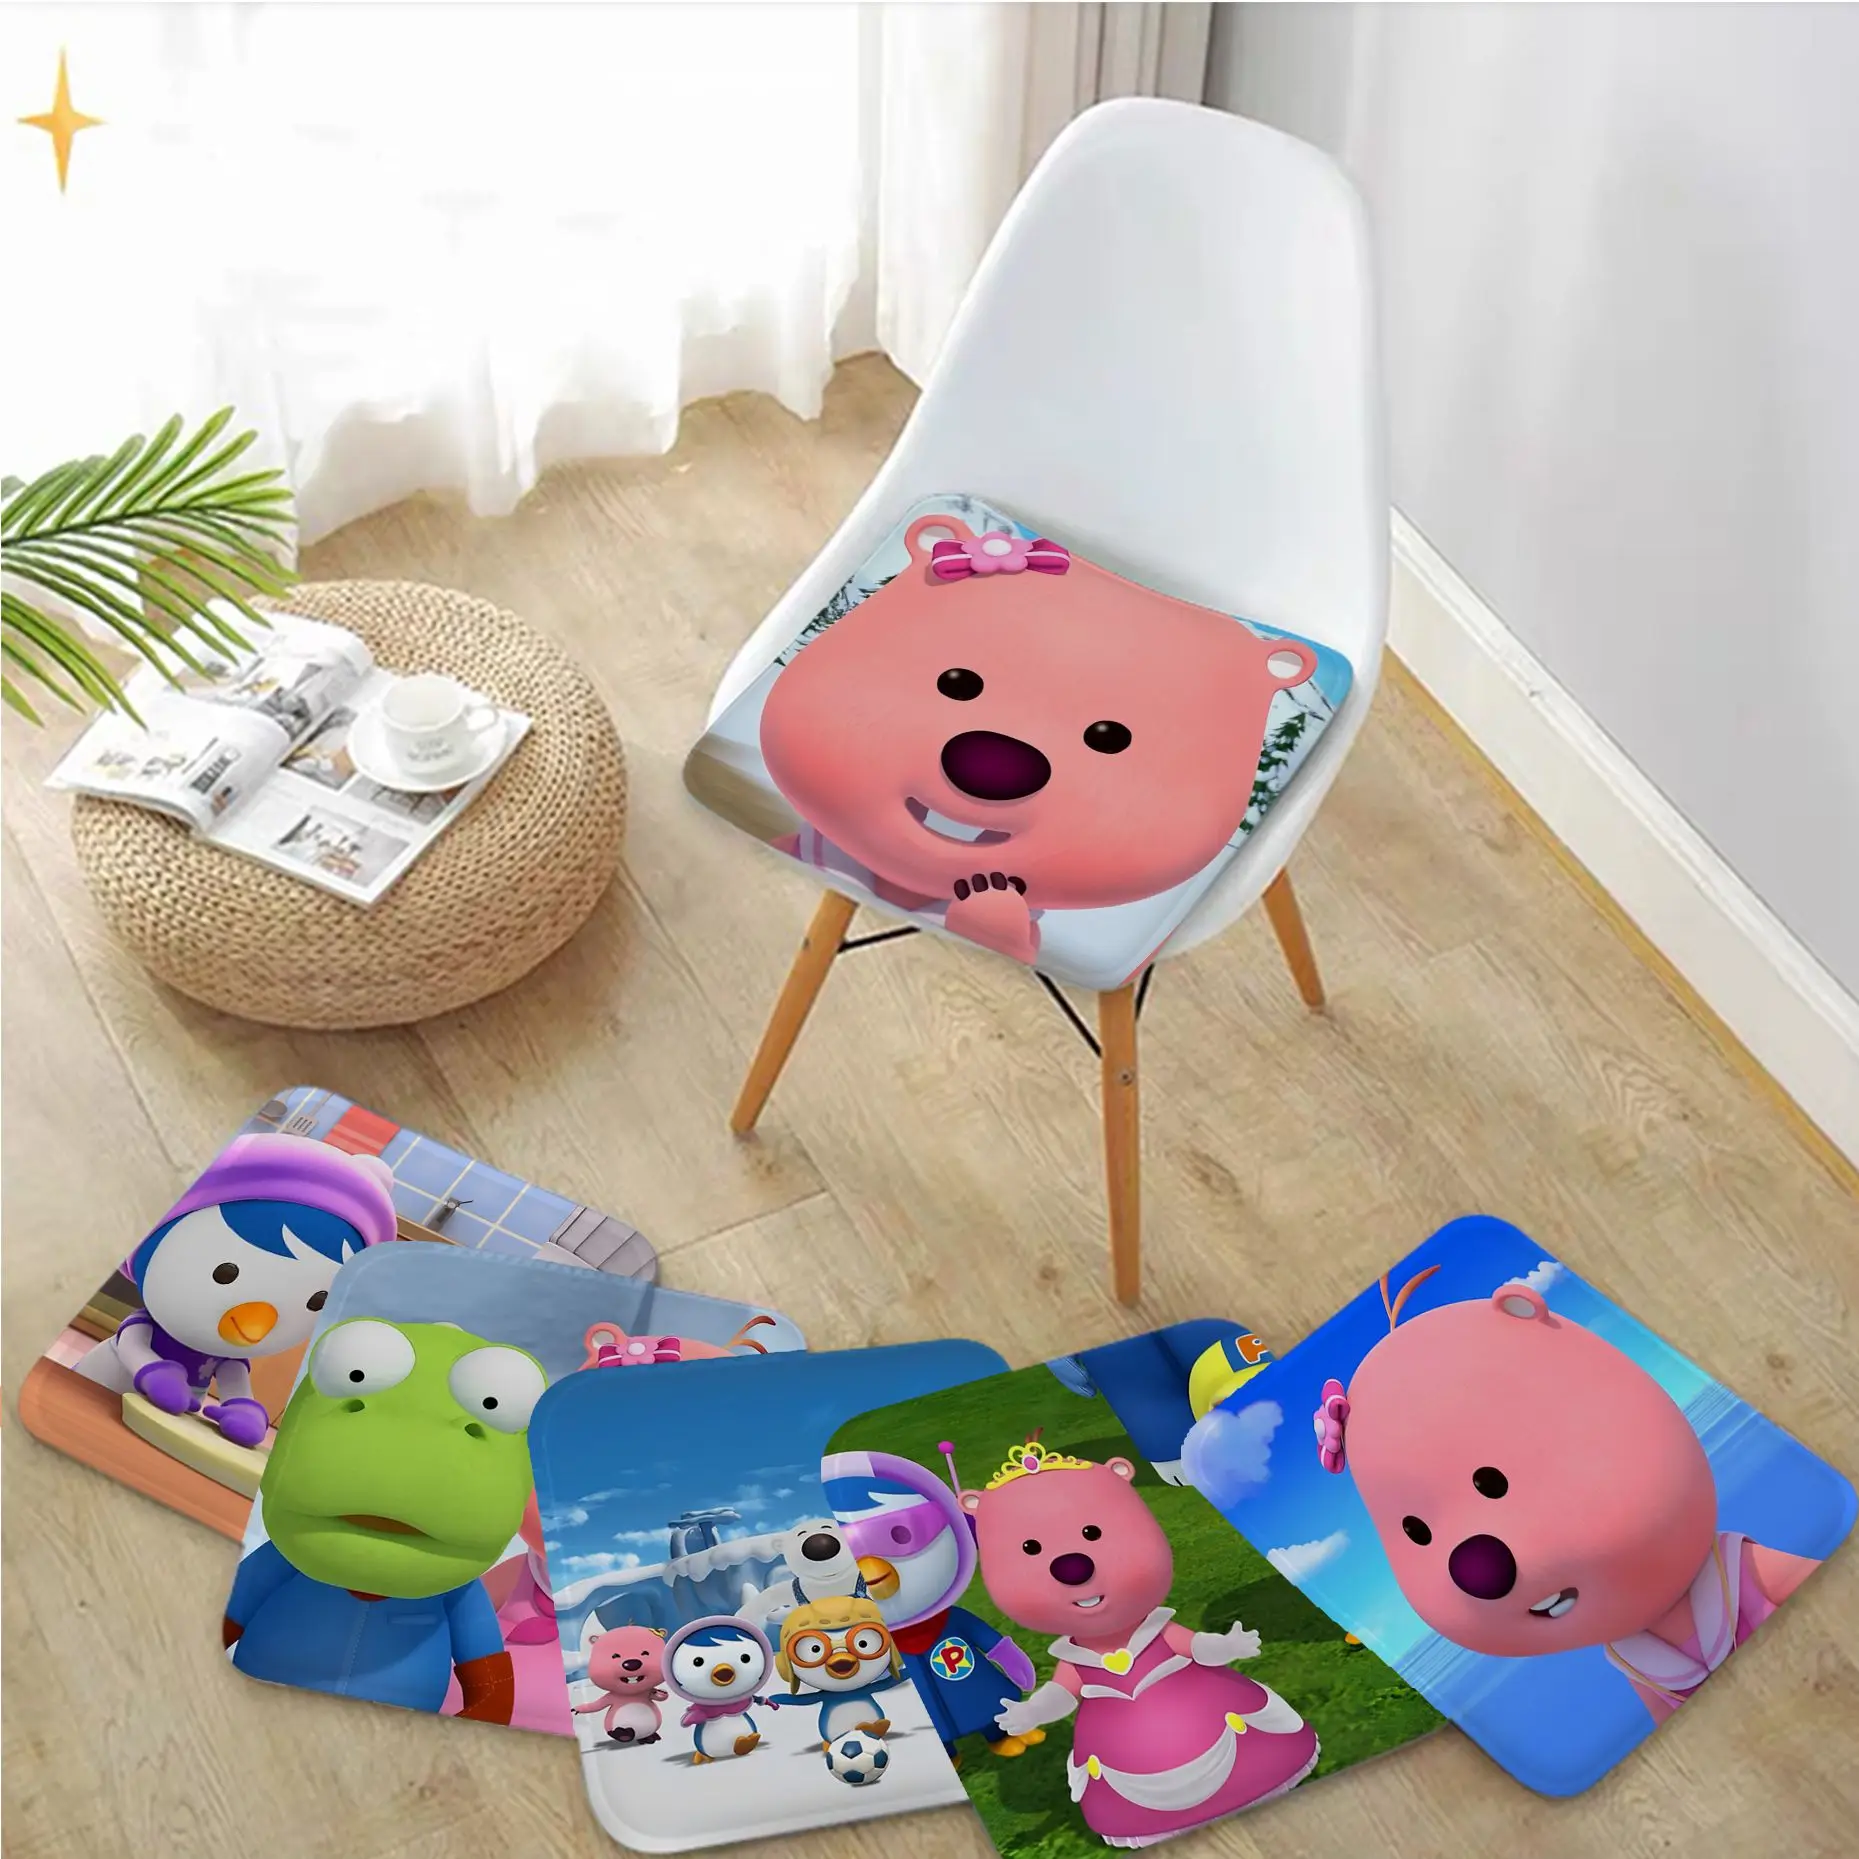 

MINISO Korea Cartoon P-Pororo Loopy Round Fabric Cushion Non-slip Living Room Sofa Decor Students Stool Tatami Office Seat Mat